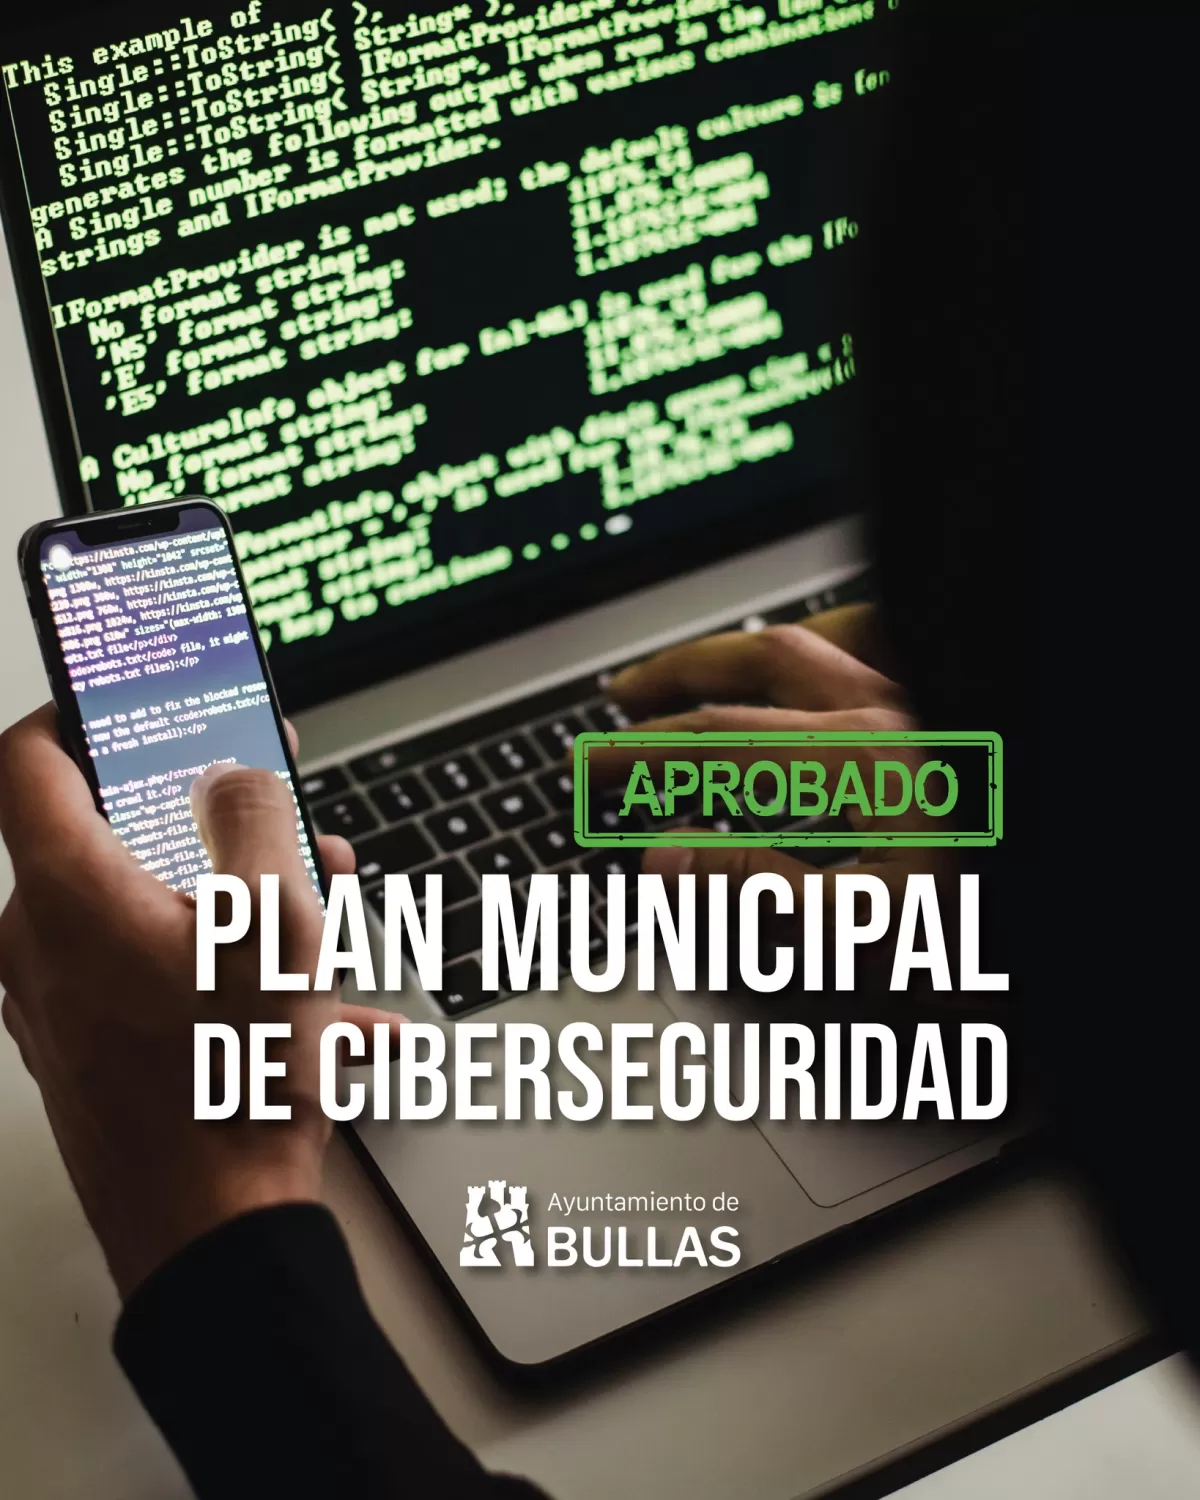 El Ayuntamiento de Bullas, primer consistorio en aprobar un Plan Municipal de Ciberseguridad